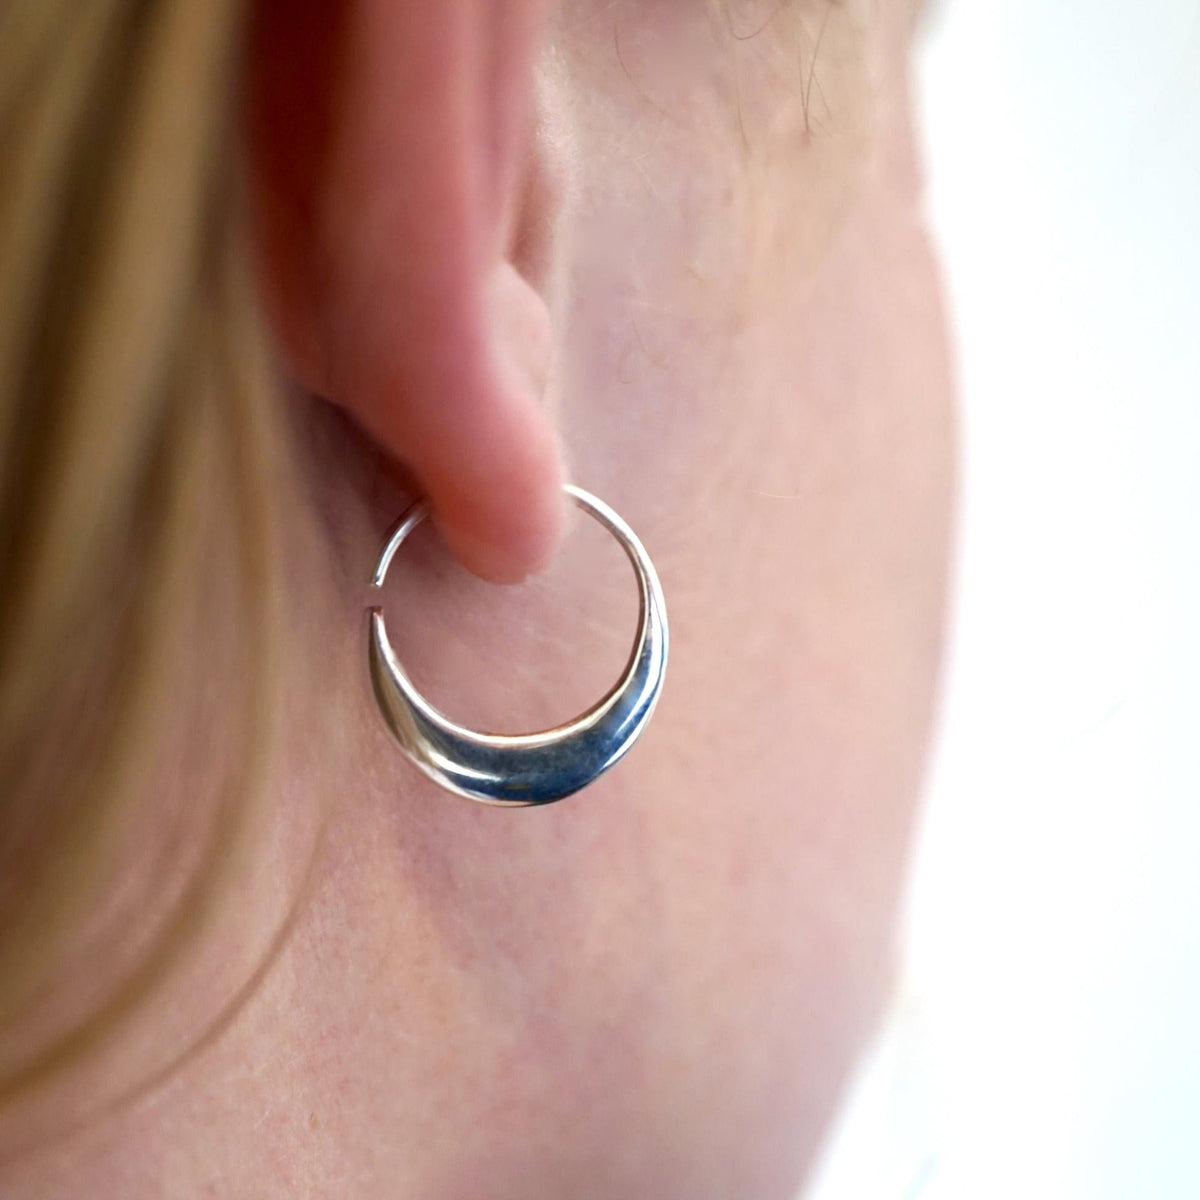 Crescent Moon Hoops 14mm - Solid Sterling Silver Earrings - Sleeper Hoops (S260)